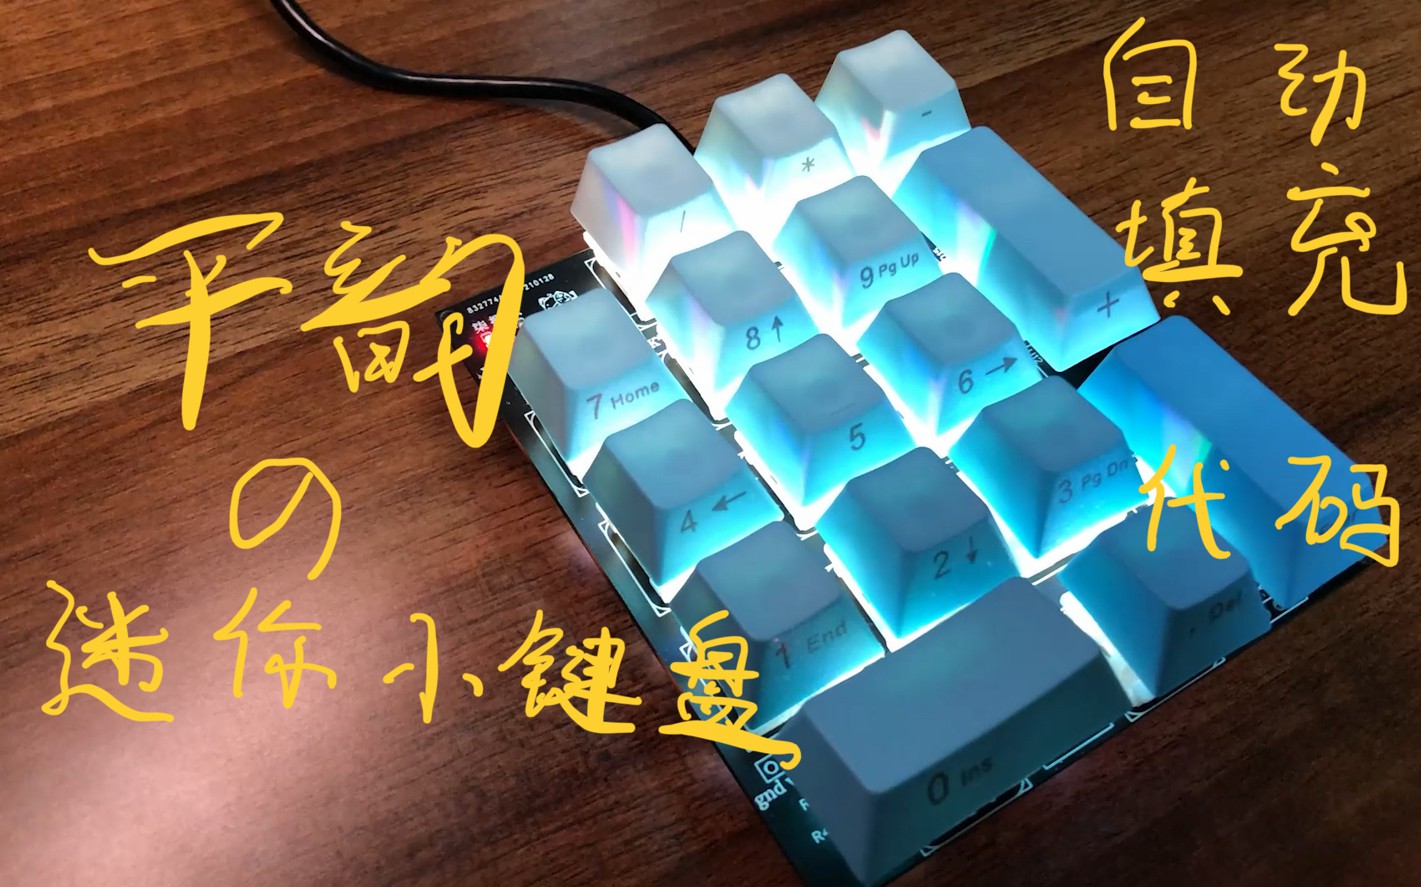 基于arduino的小键盘，可以快速填充代码！